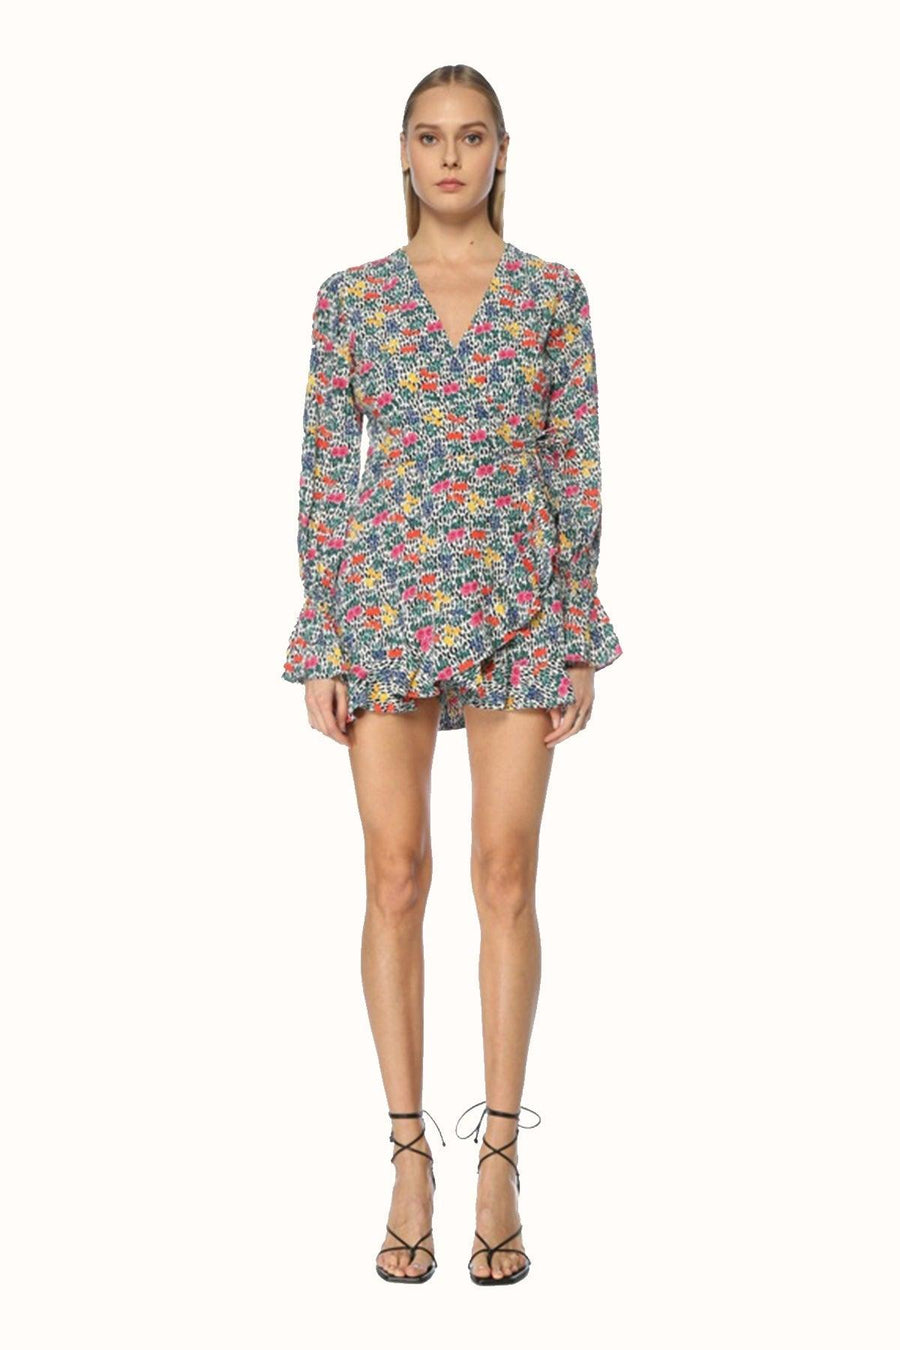 Lovelynn Tulum Elbise / Renkli Çiçekli - NAIA ISTANBUL Shop Online